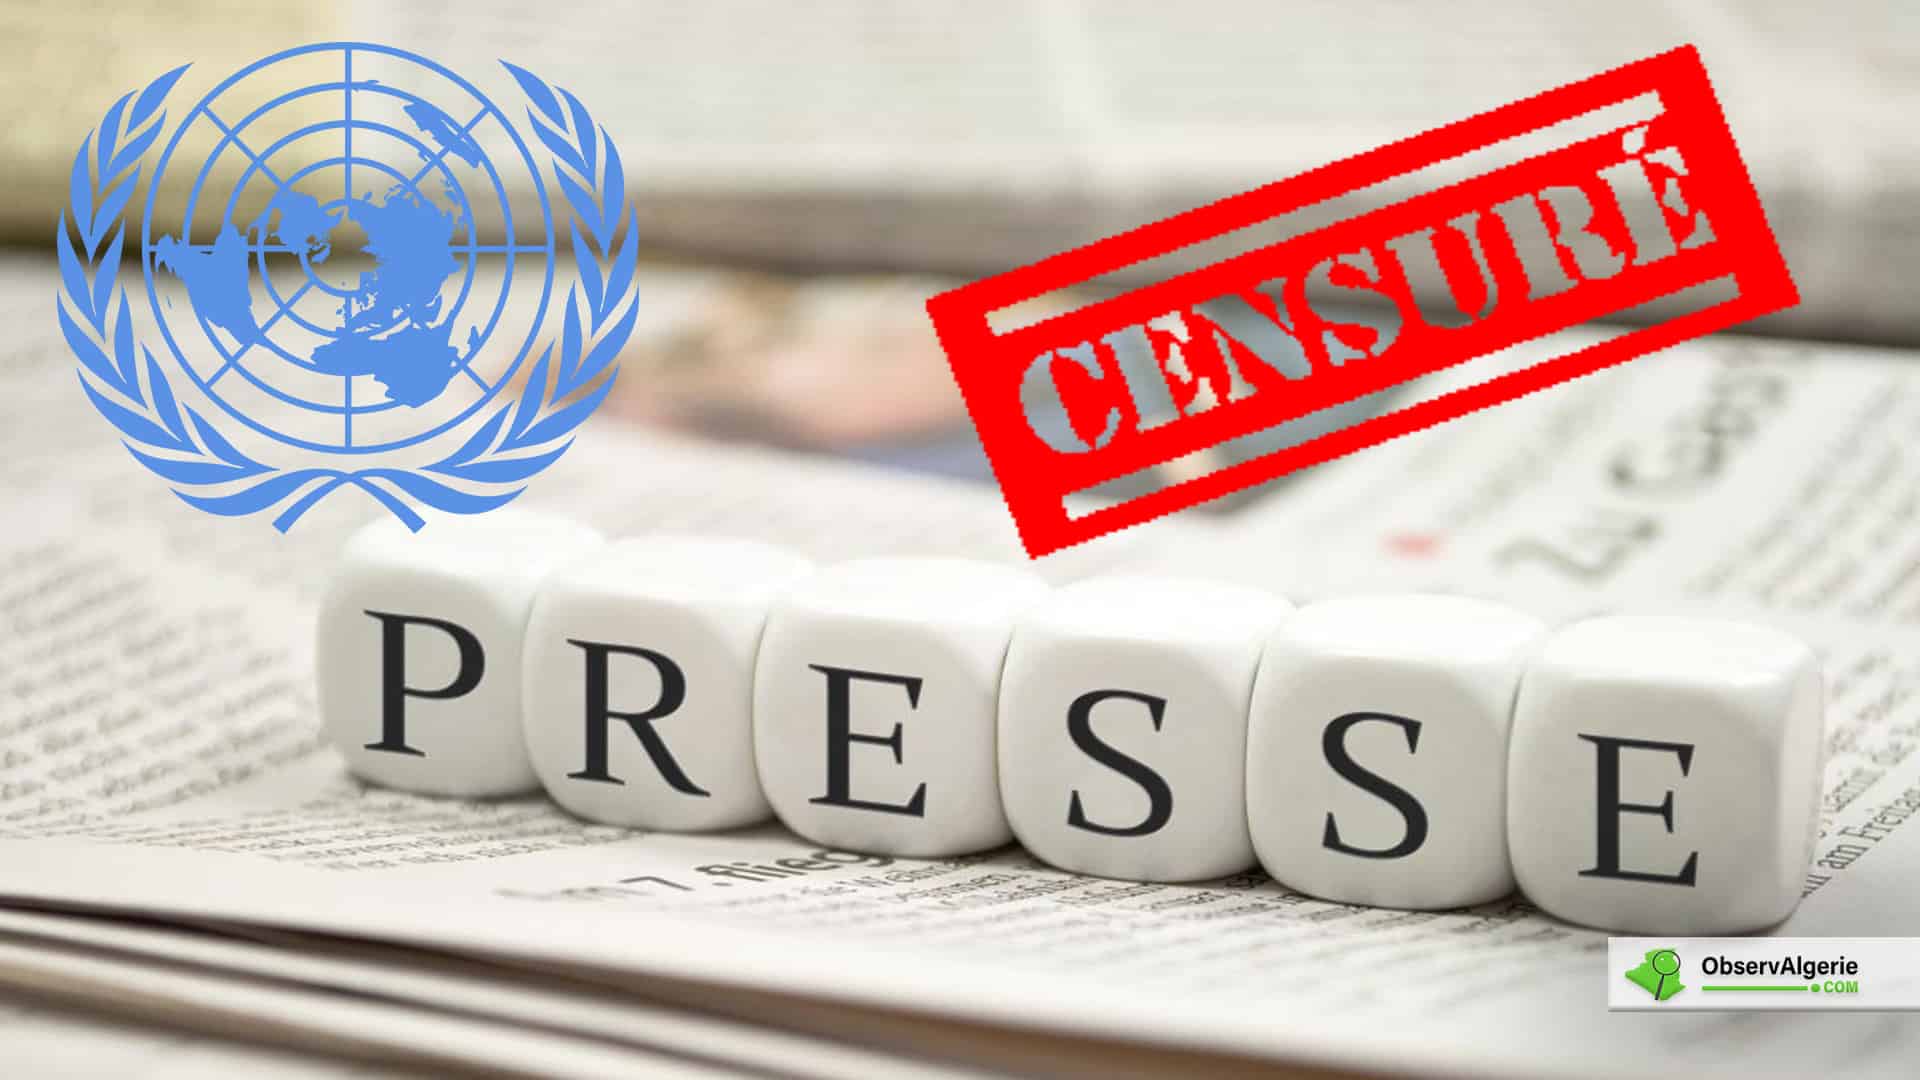 Montage : L'ONU sur fond de la presse censurée